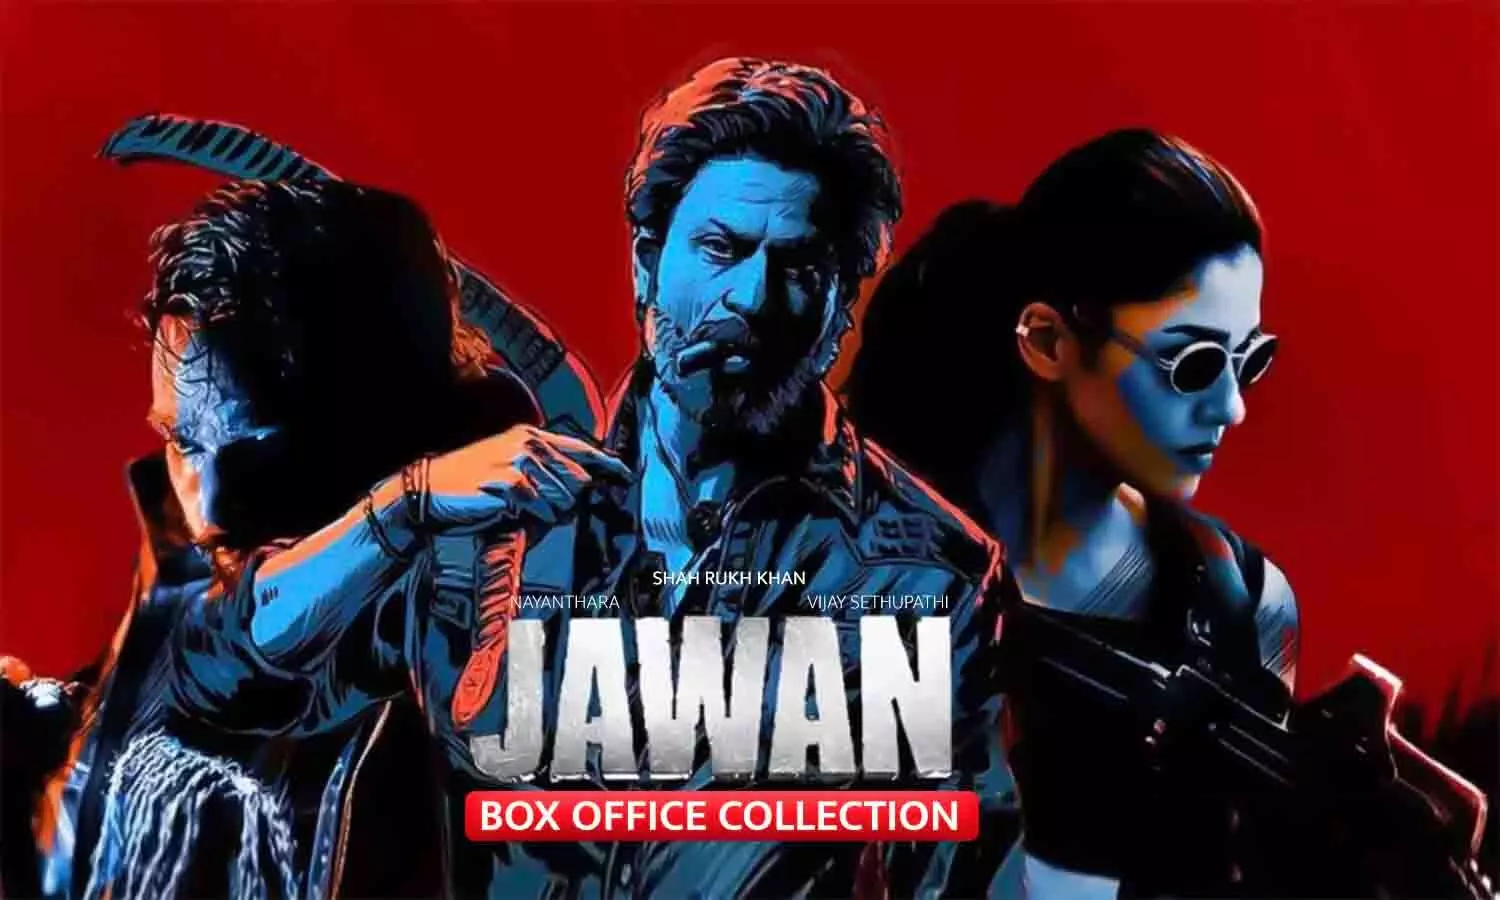 Jawan Box Office Collection Day 17: शाहरुख खान के जवान का जलवा, गदर 2 और पठान के लाइफटाइम कलेक्शन को पछाड़ा